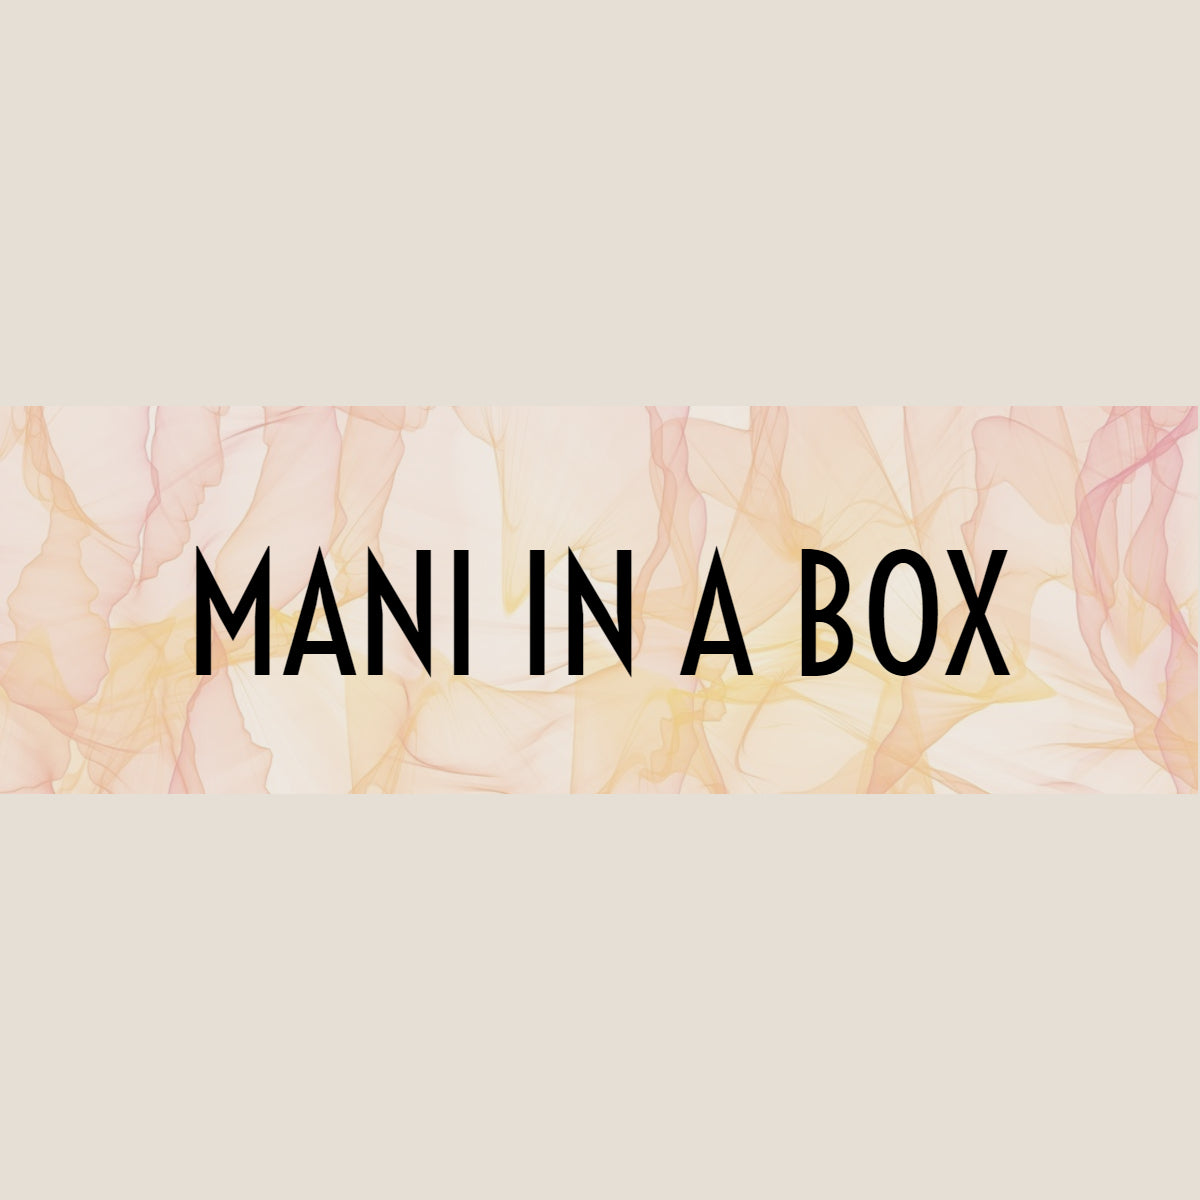 Mani in a box